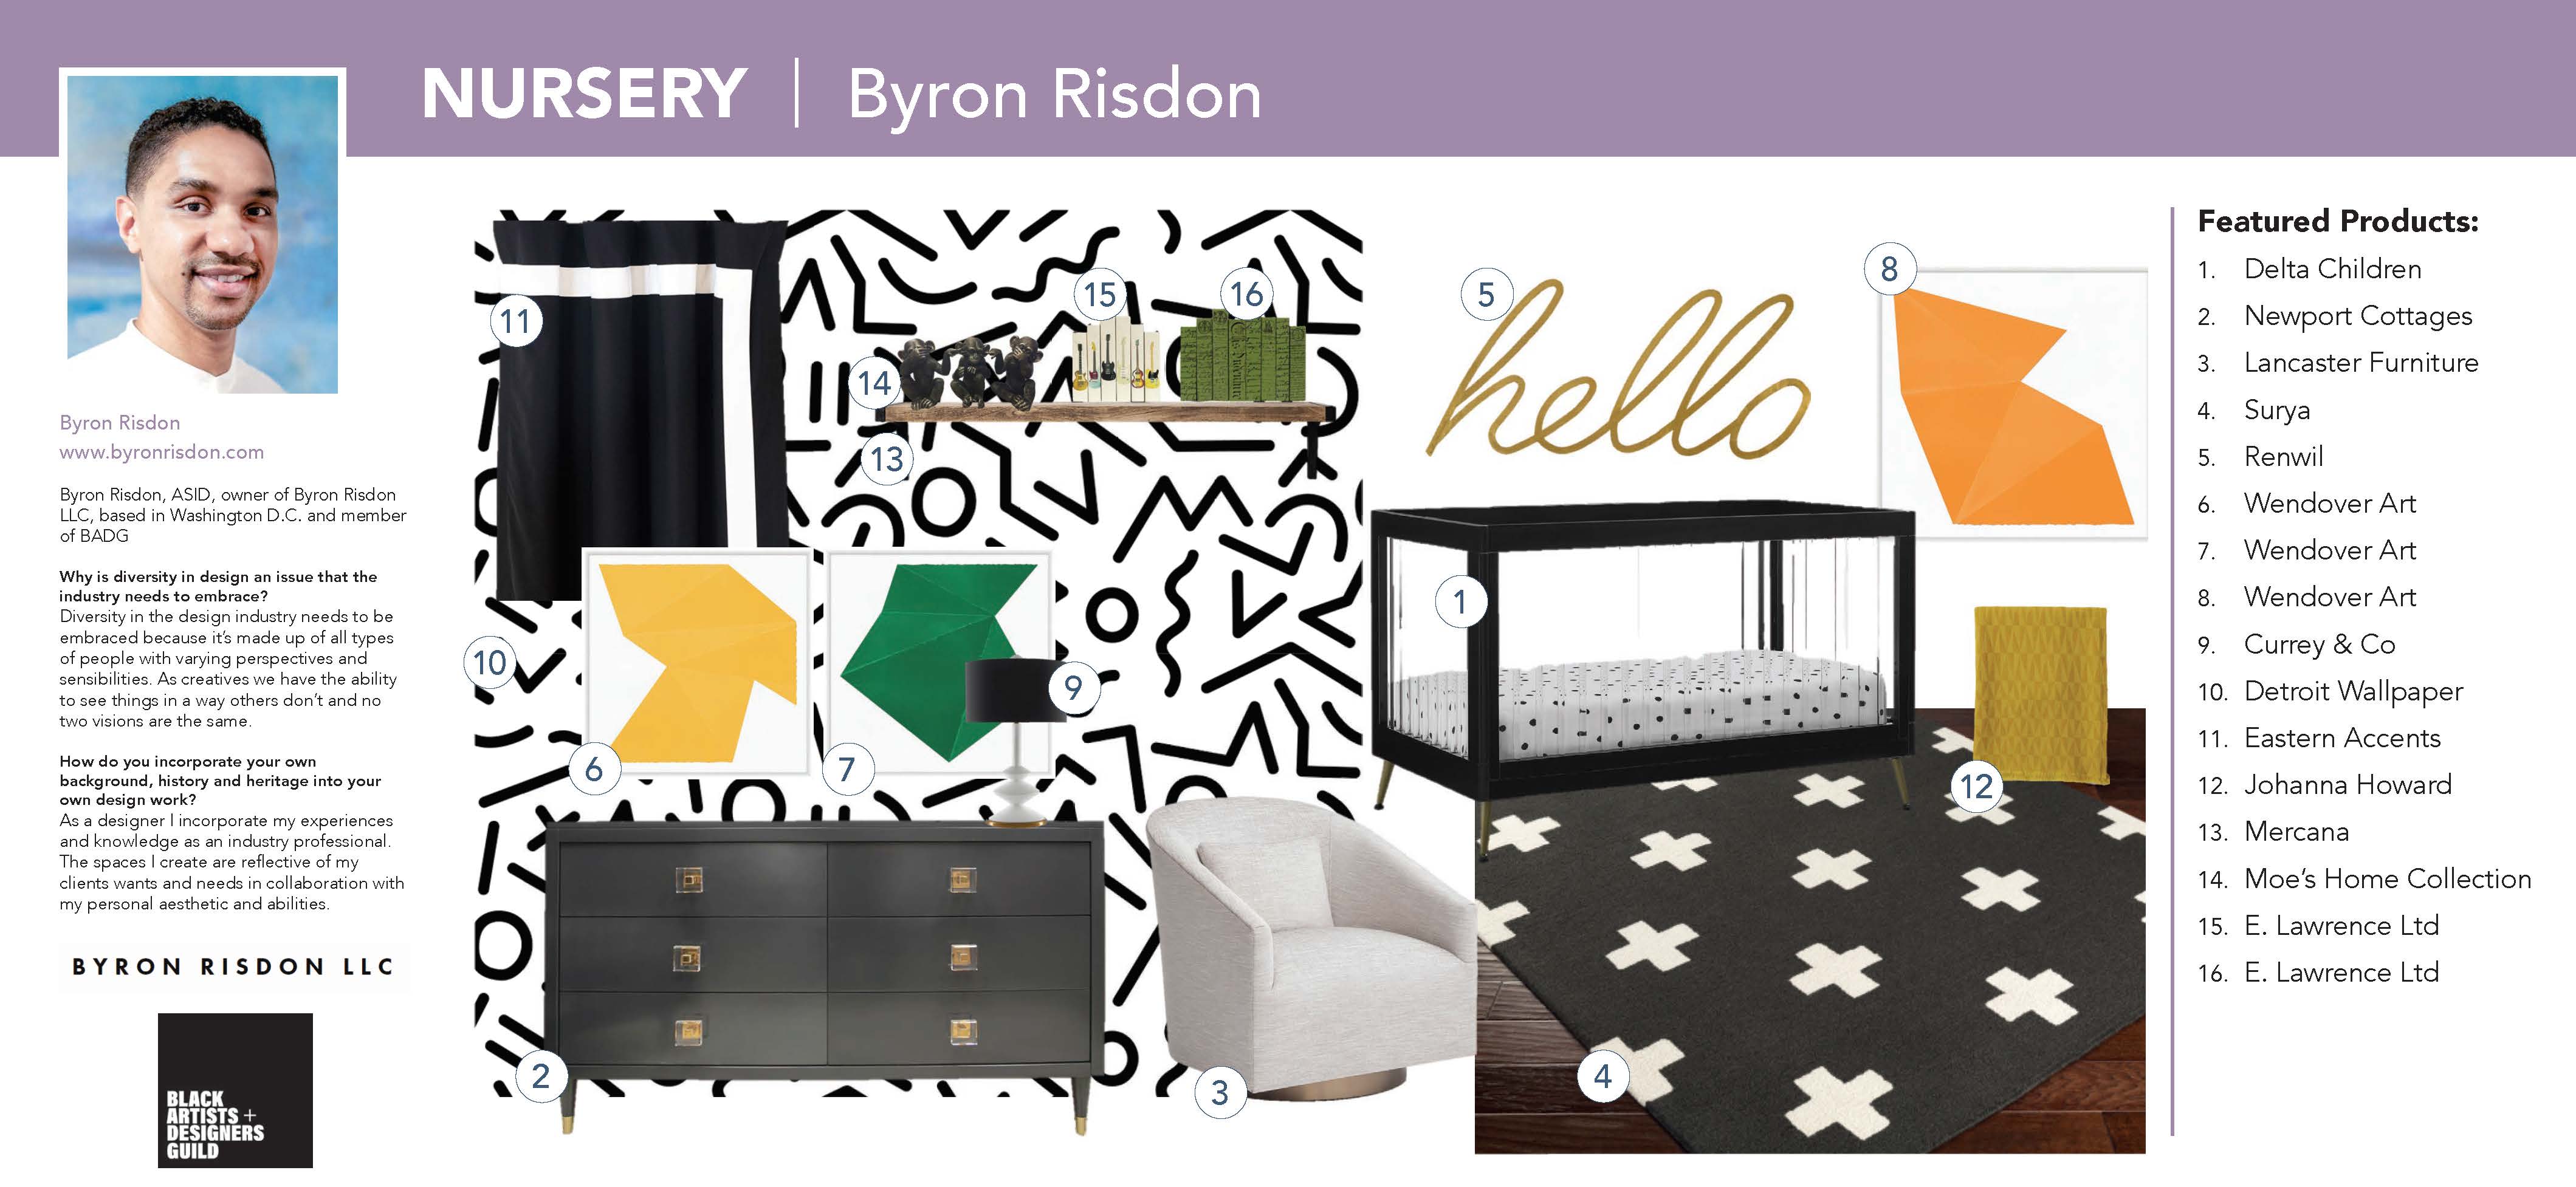 Byron Risdon Virtual Showhouse